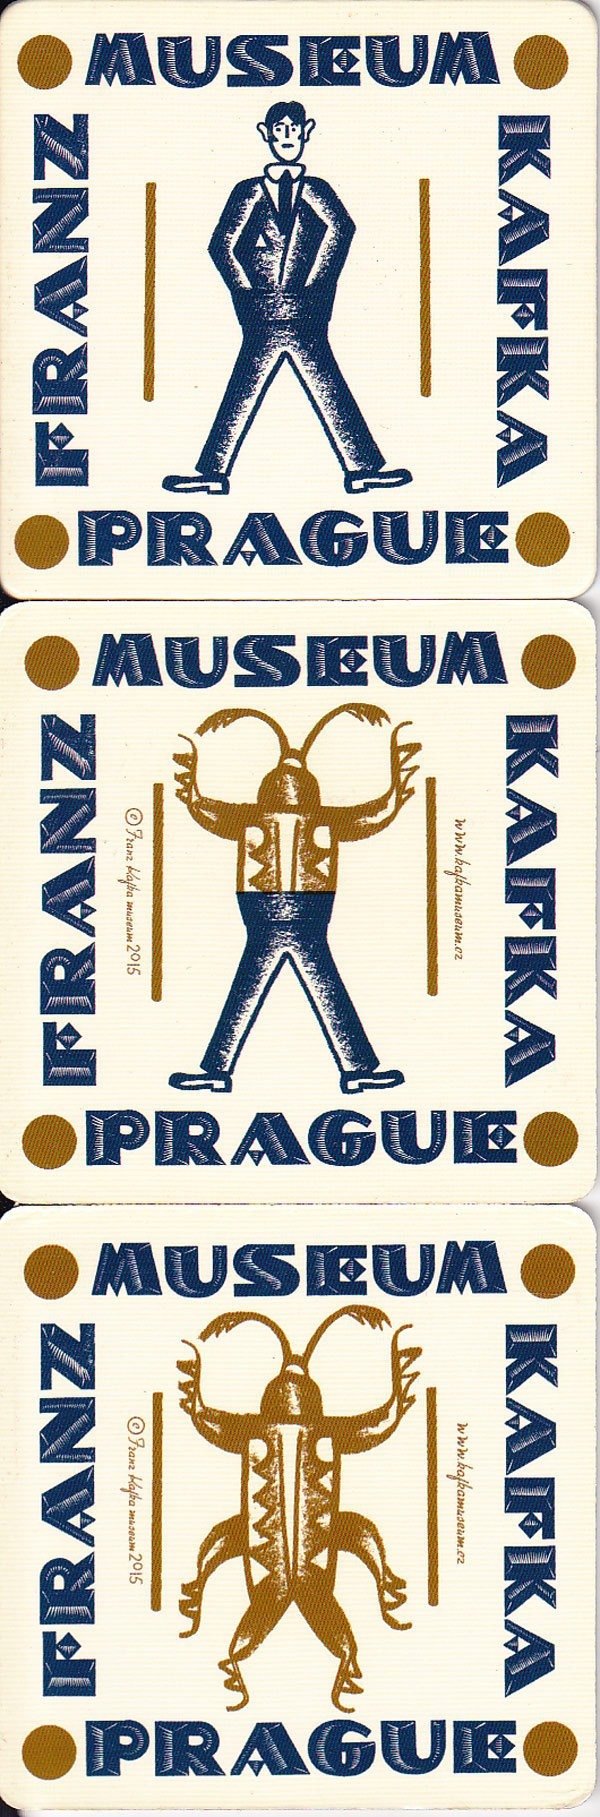 Franz Kafka Museum Prague by Hurlimann, Bettina